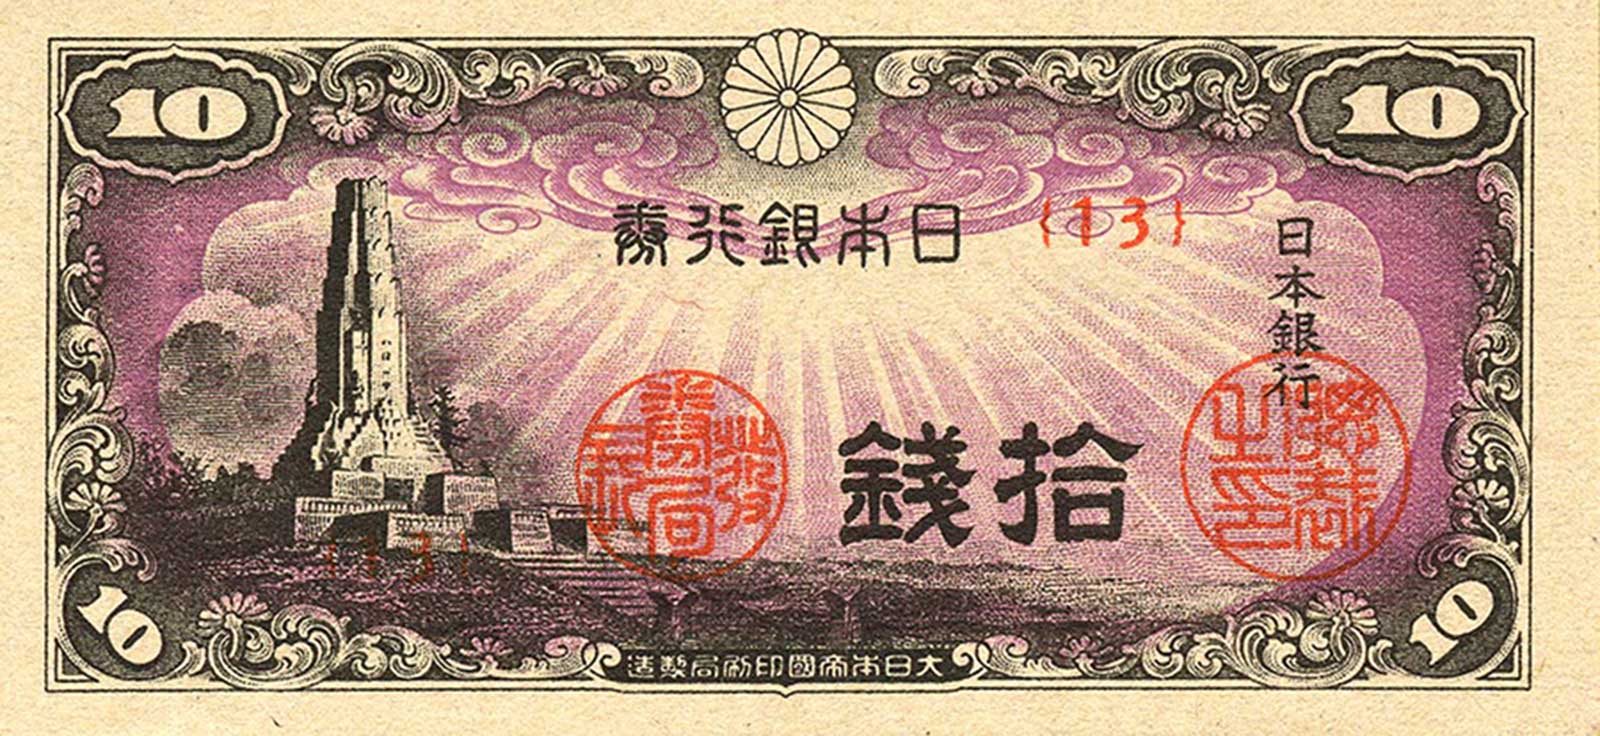 Billet de banque japonais de 10 sen d'avant-guerre représentant la tour d'Hakkō ichiu à Miyazaki. -